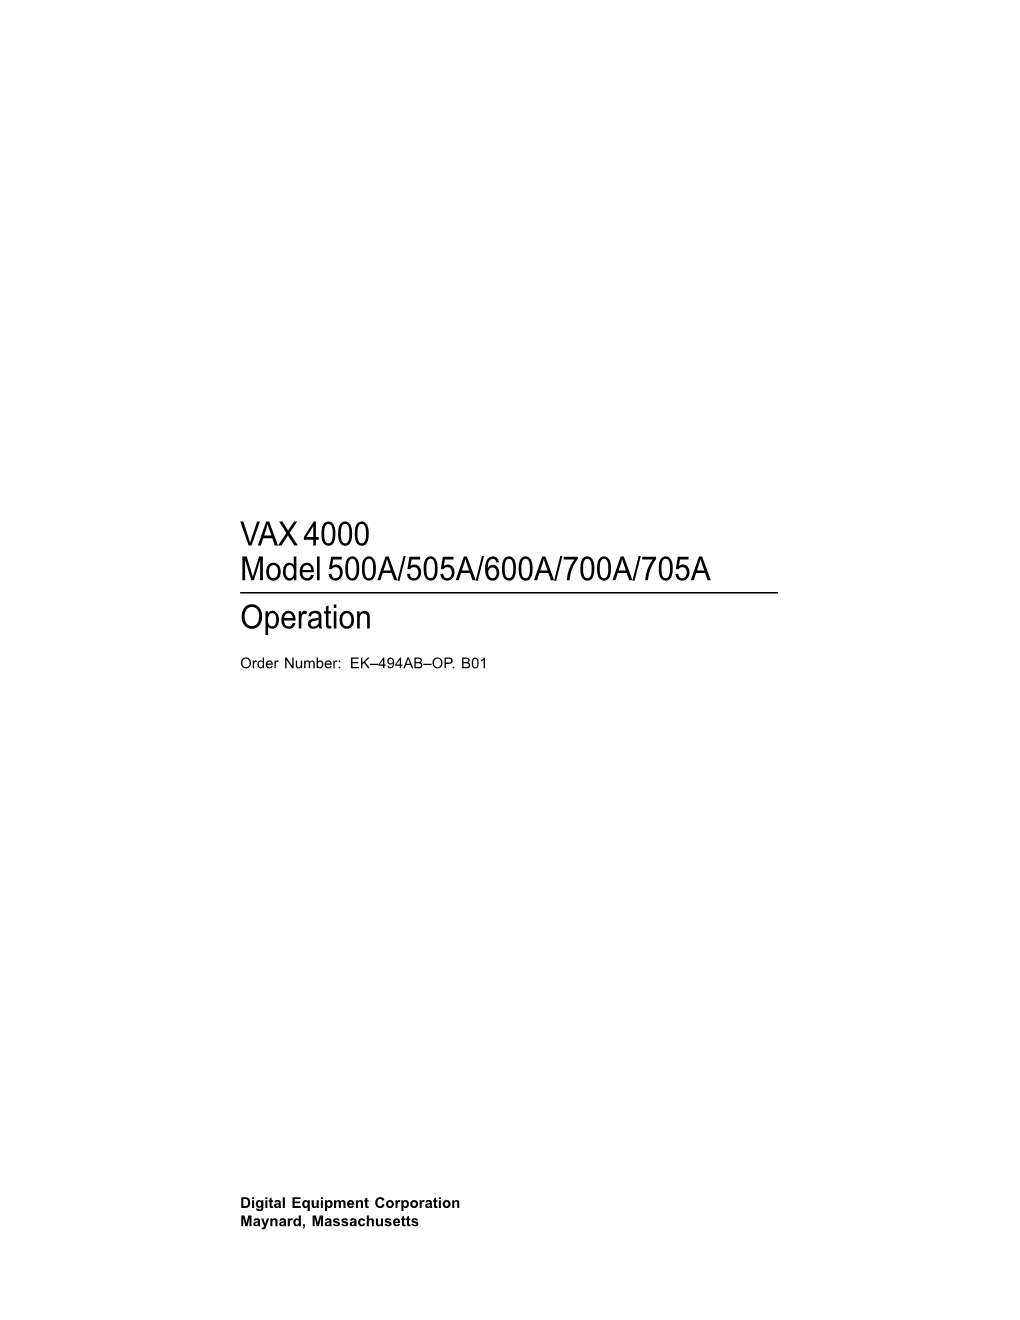 VAX 4000 Model 500A/505A/600A/700A/705A Operation